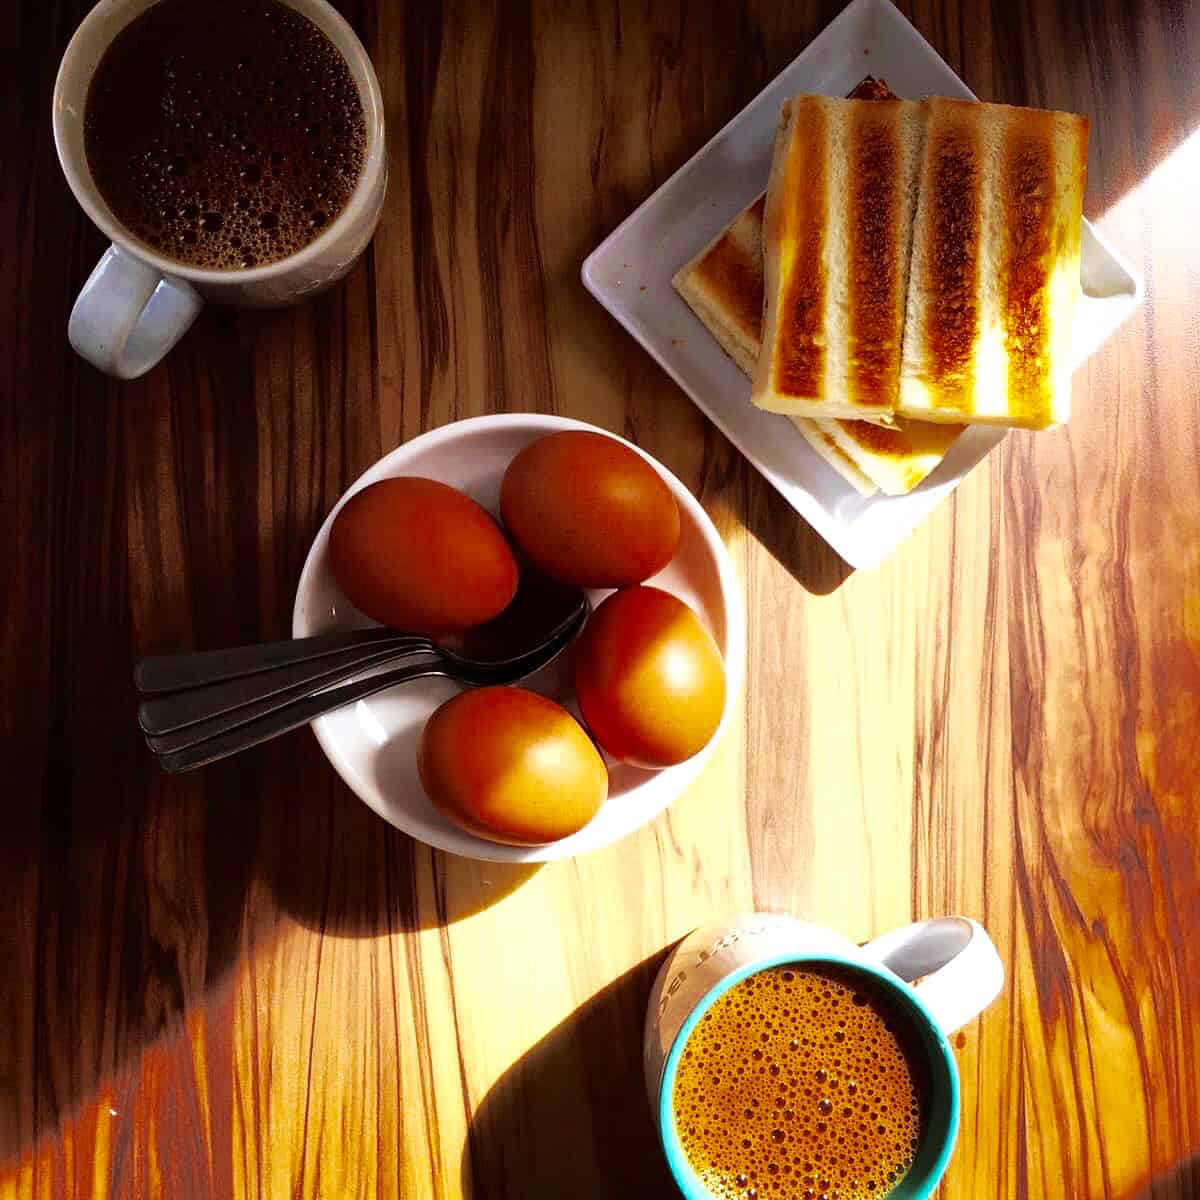 Singapore Breakfast: Kaya Toast and Eggs